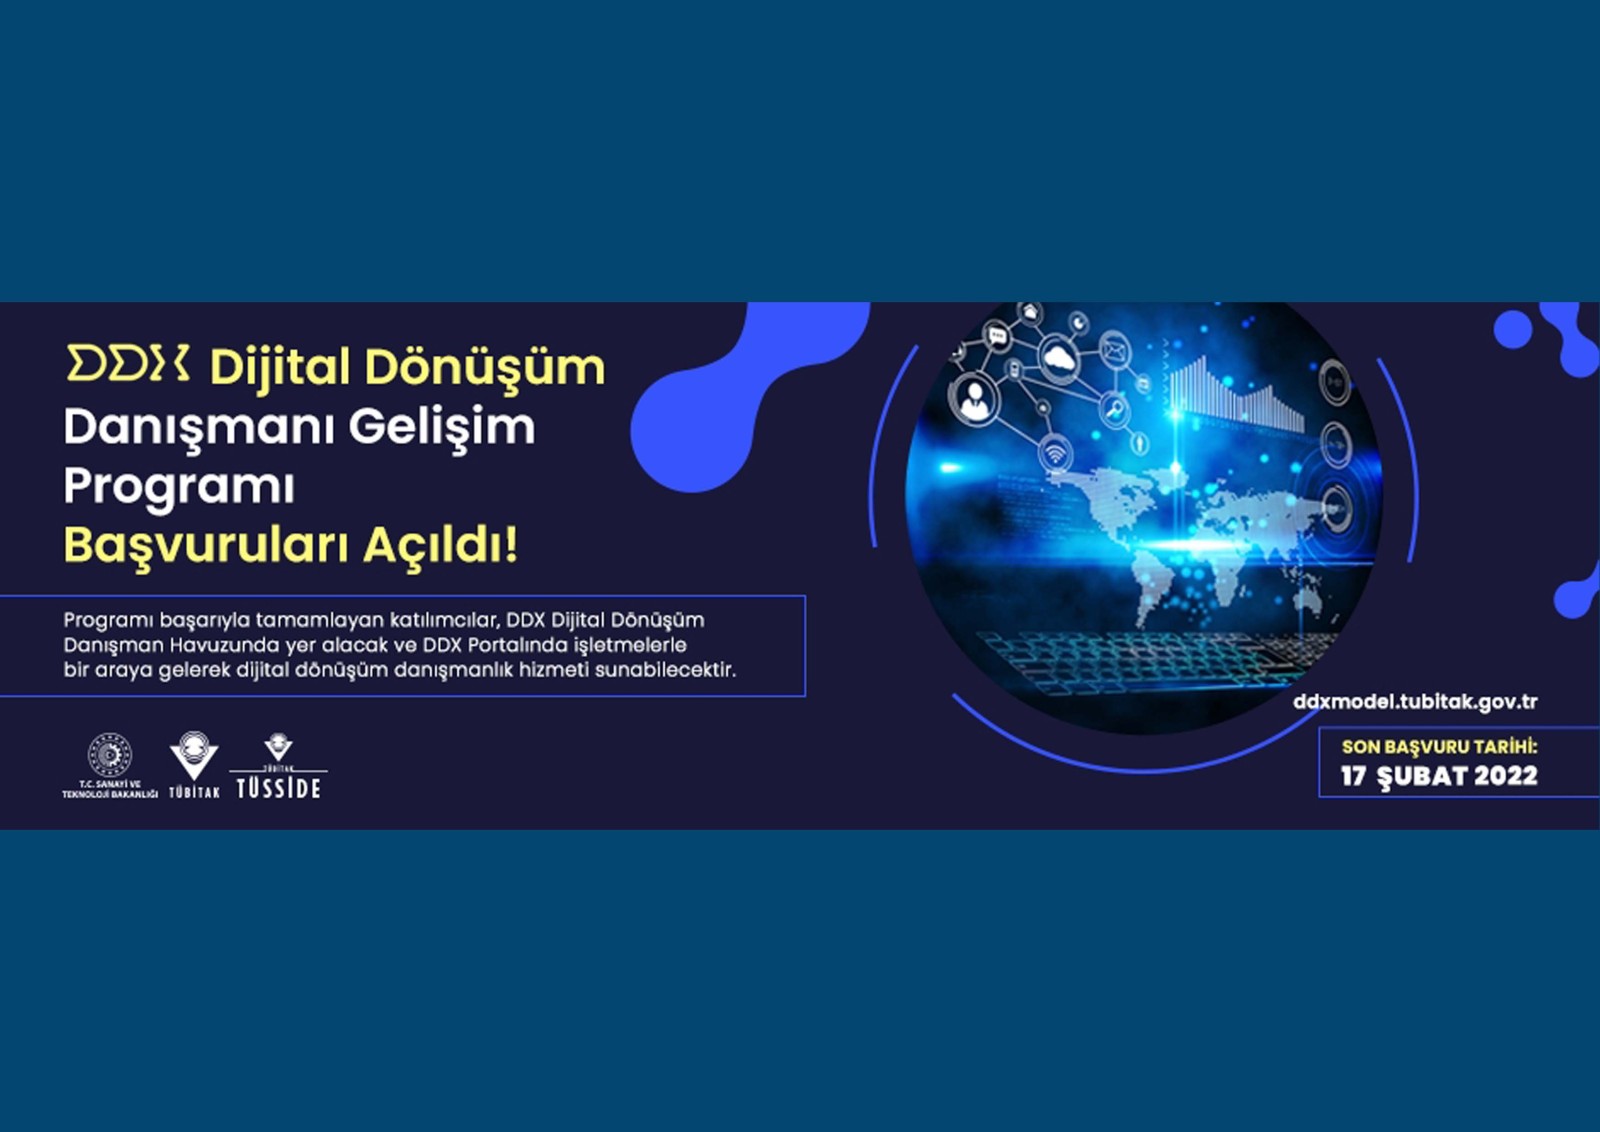 “DDX Dijital Dönüşüm Danışmanı Gelişim Programı” Yeni Dönem Başvuruları Başladı